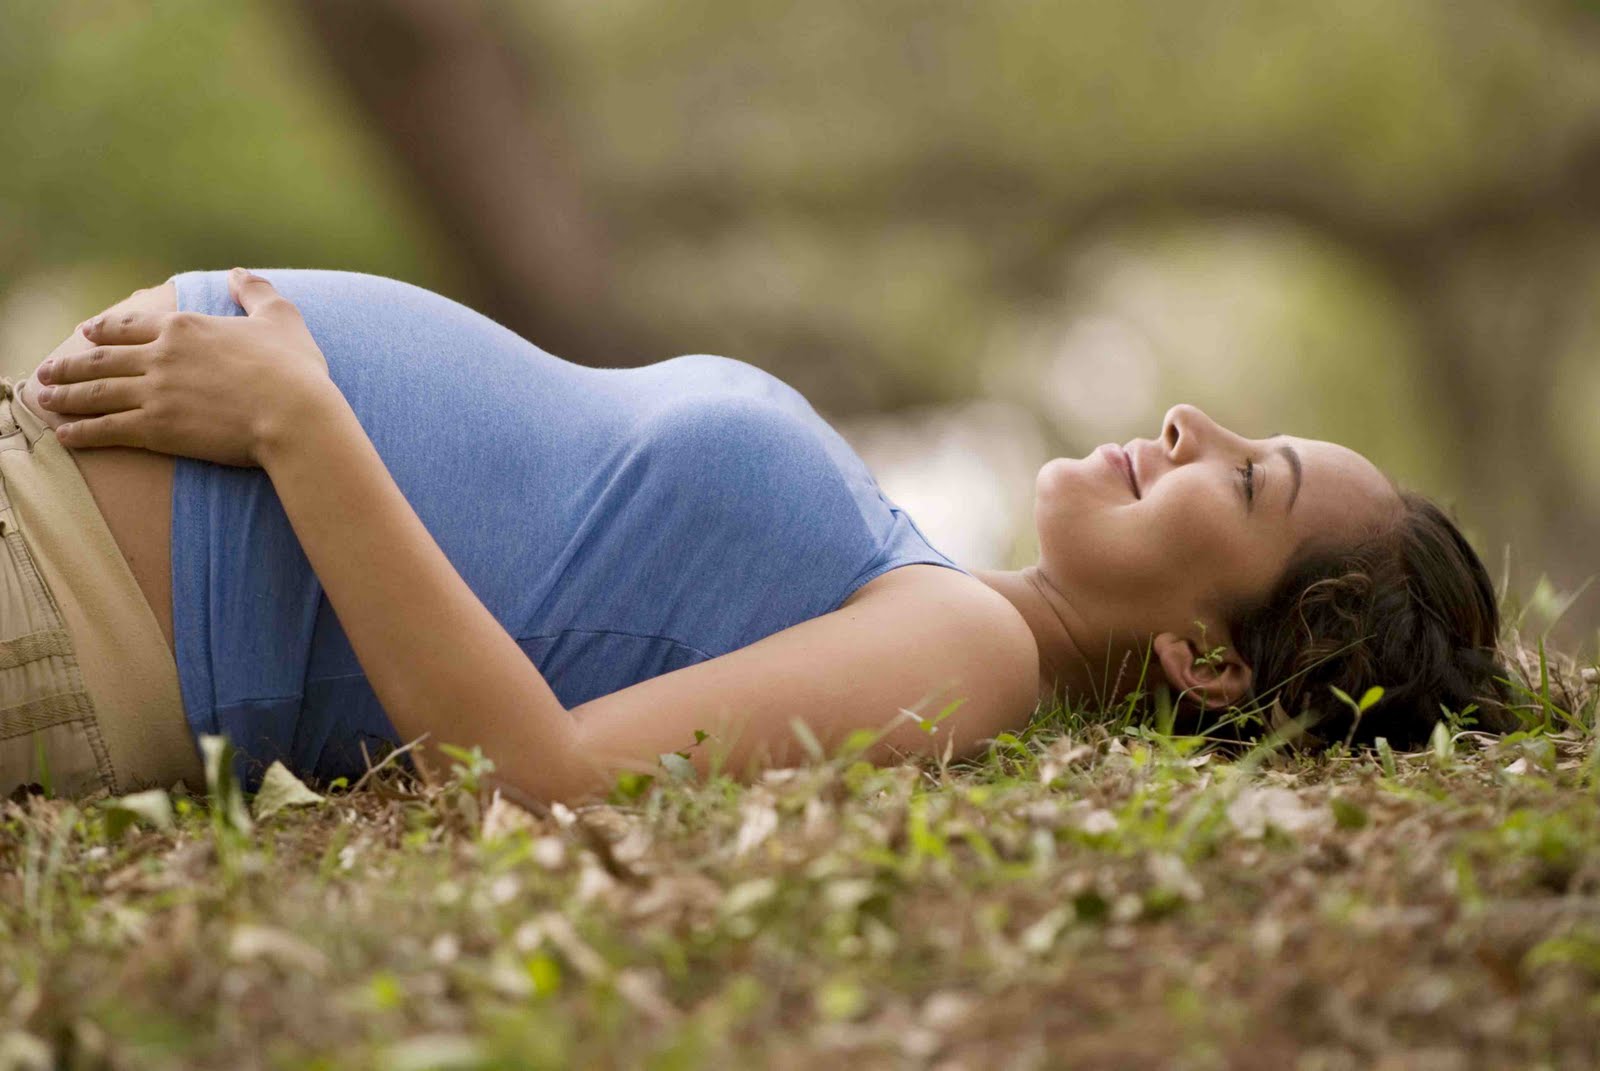 Οι γυναίκες με επιληψία μπορούν να γίνουν μητέρες;